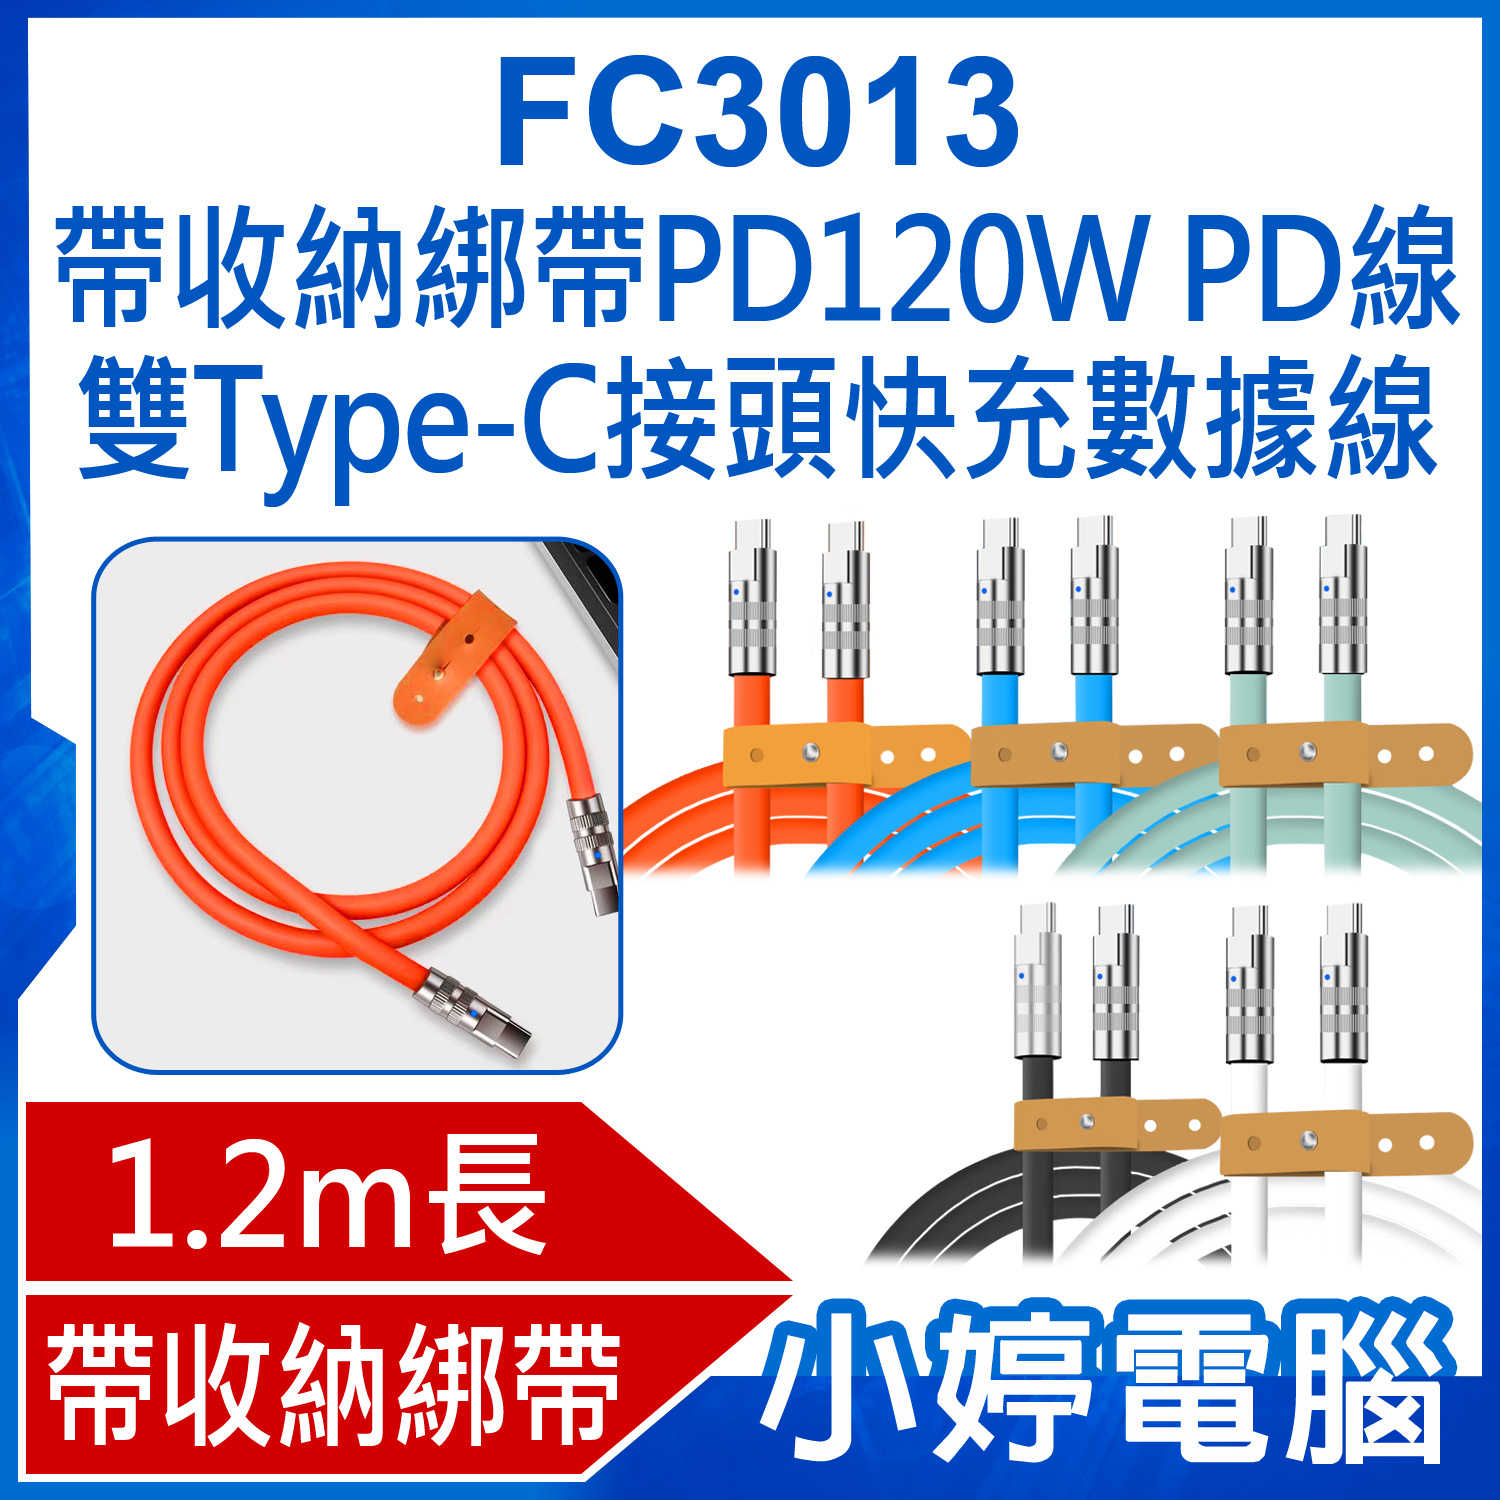 【小婷電腦】全新 FC3013 1.2m 帶收納綁帶PD120W PD線雙Type-C接頭快充數據線極客線/CC線